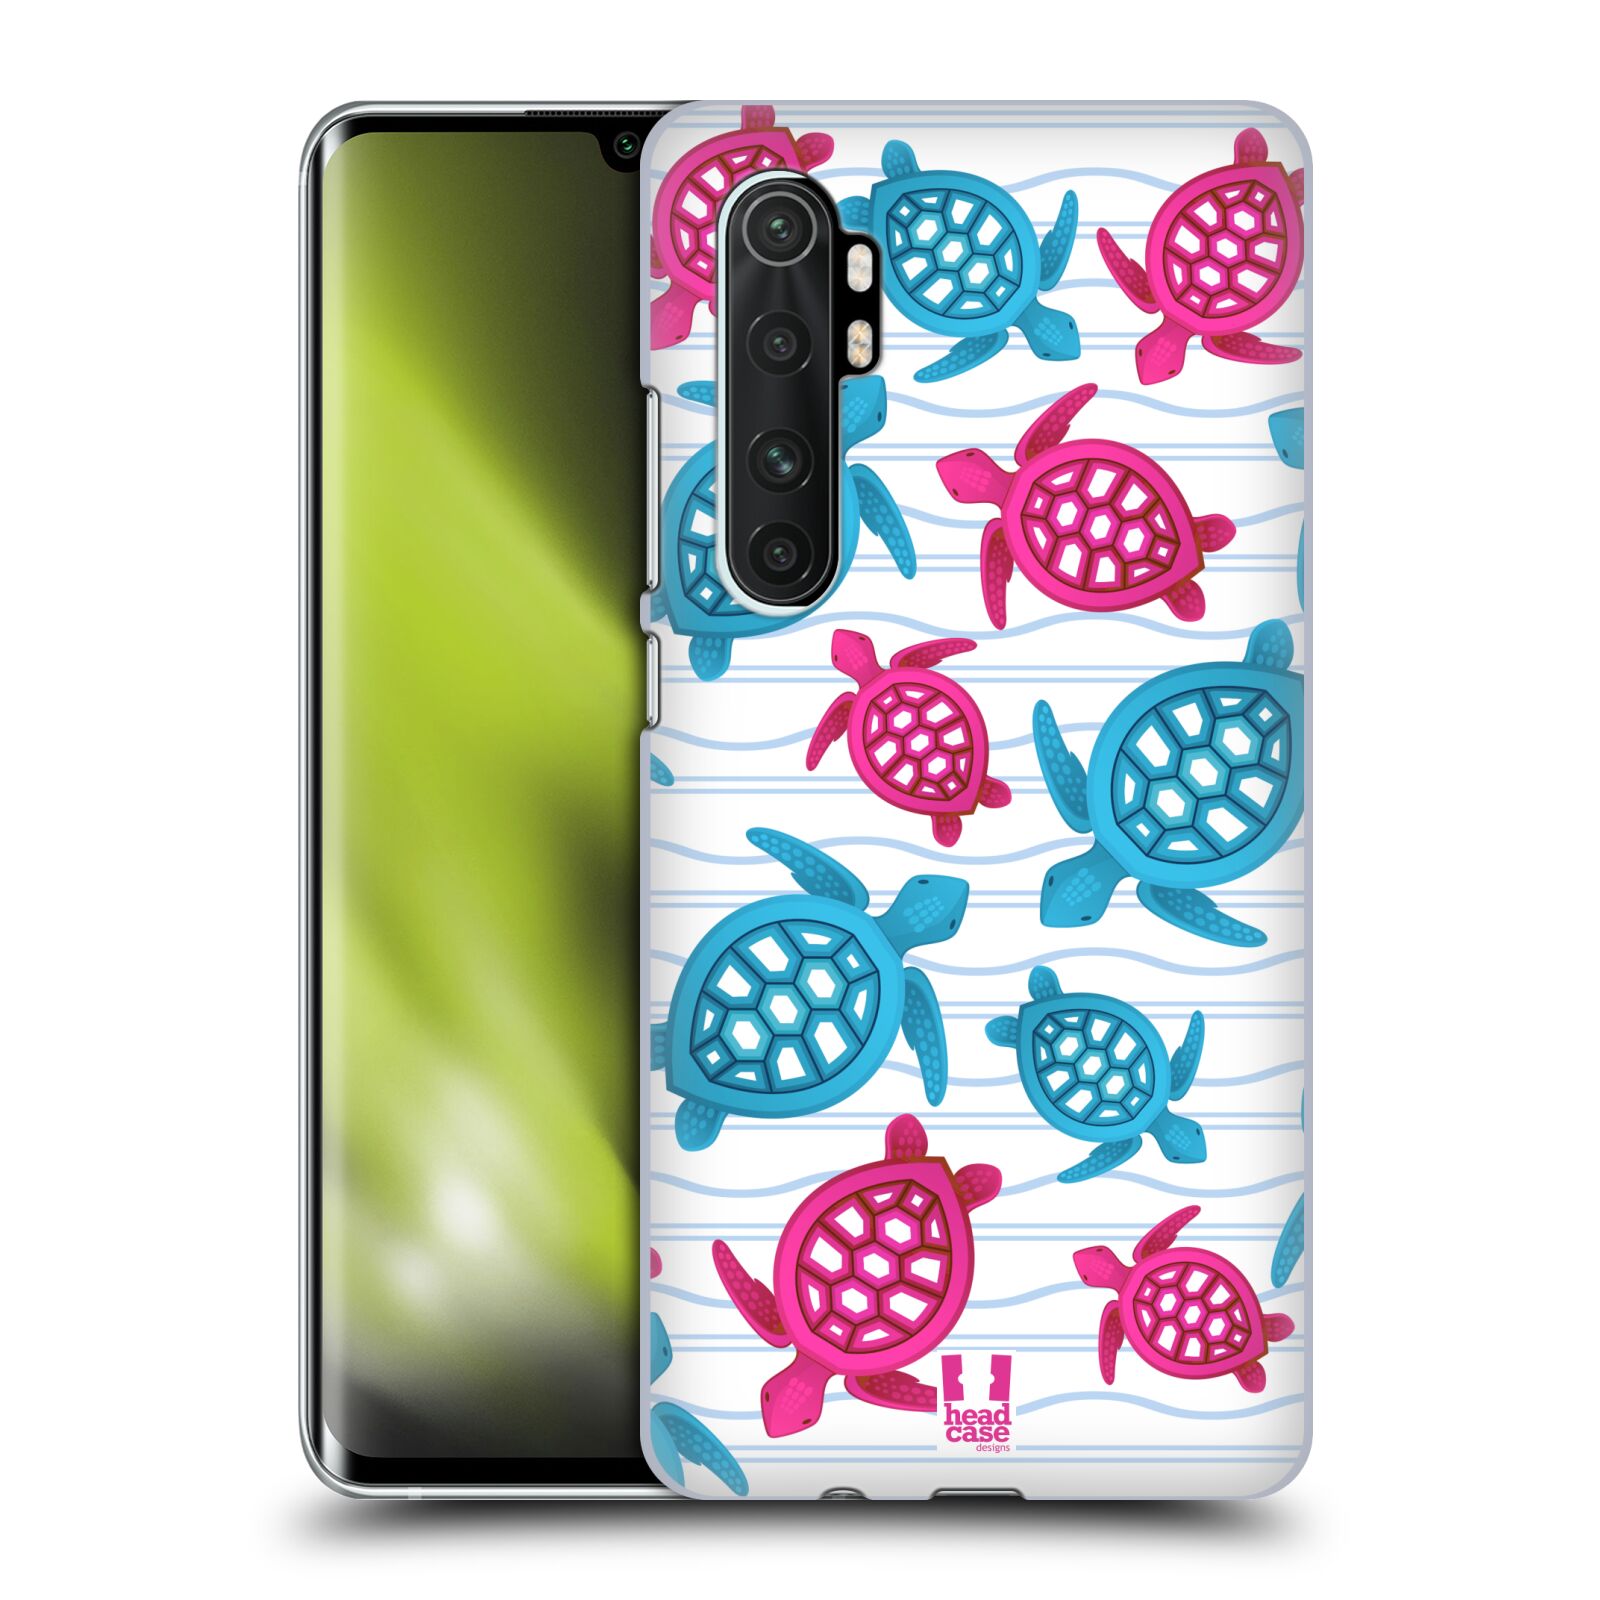 Zadní obal pro mobil Xiaomi Mi Note 10 LITE - HEAD CASE - kreslený mořský vzor želvičky